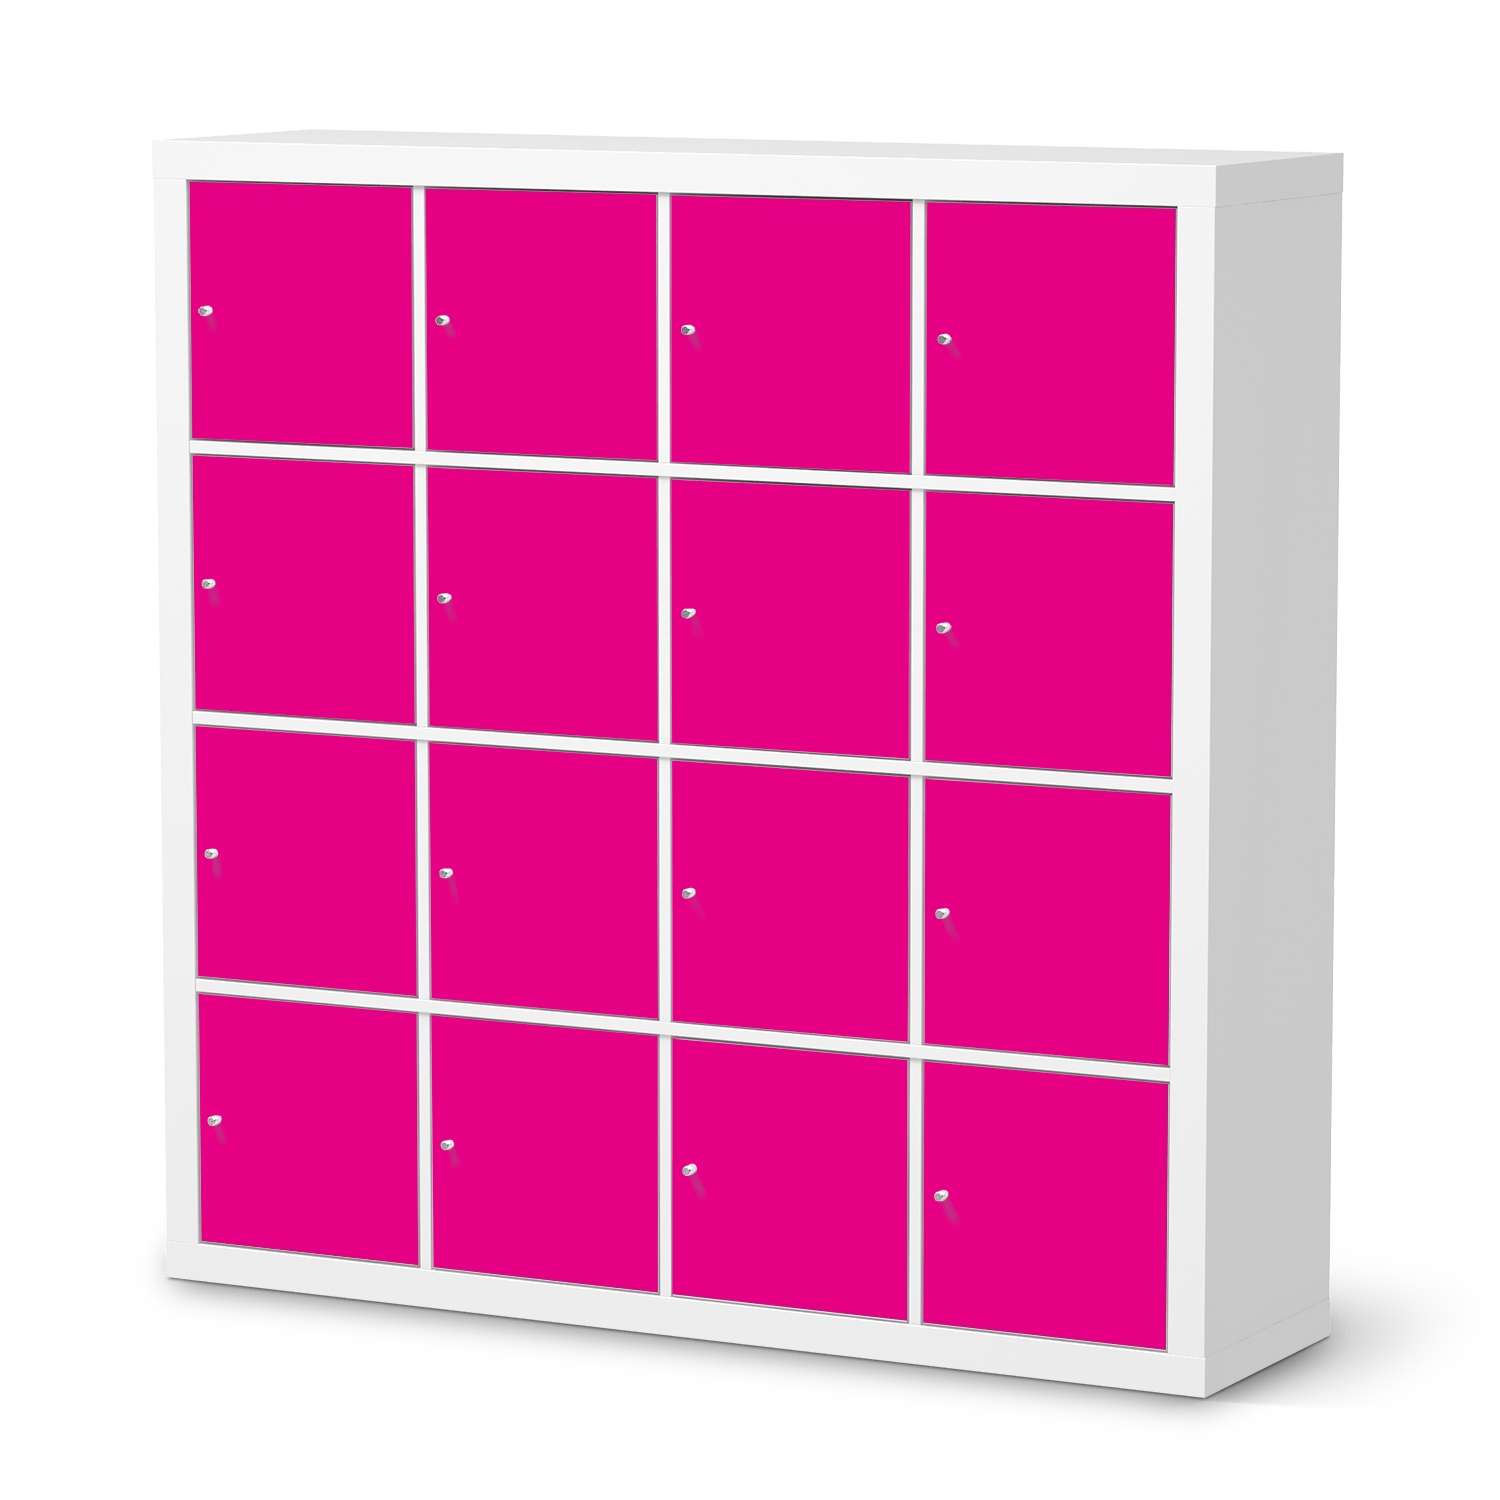 M?belfolie IKEA Kallax Regal 16 T?ren - Design: Pink Dark von creatisto